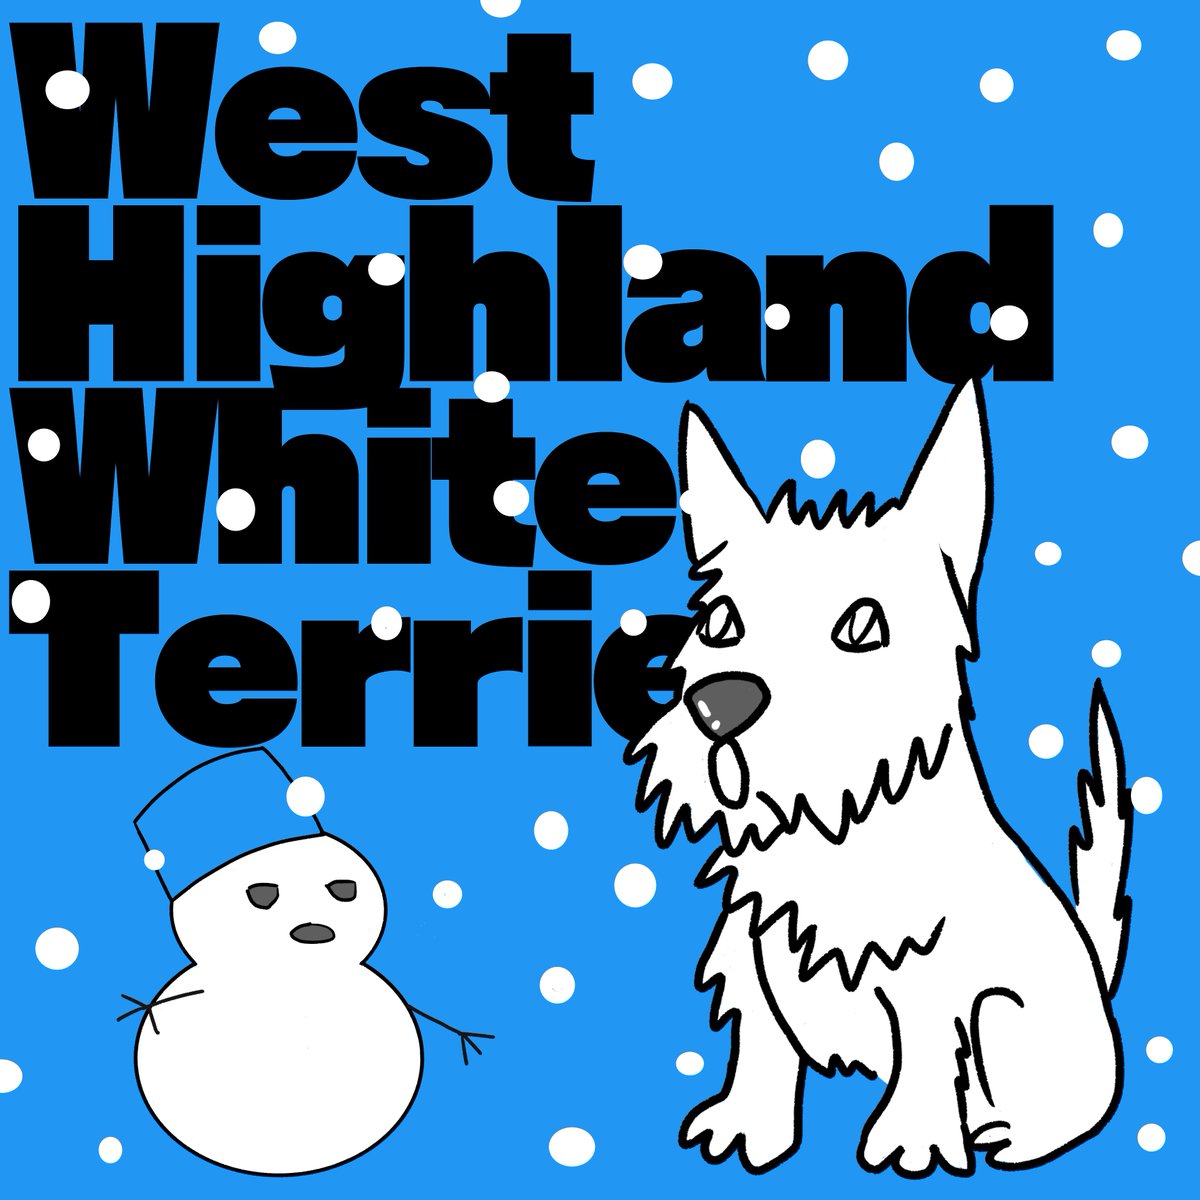 プレゼント用のイラストを元に描いたウエスティー。真っ白なので雪を背景にしたのですが、そろそろシーズンオフじゃん！#dogart #Westie #ウエスティー部 #drawdogs #ウエスティー好き  #Westielove #正式名称長すぎ #犬のいる暮らし #雪だるま #シーズンオフ